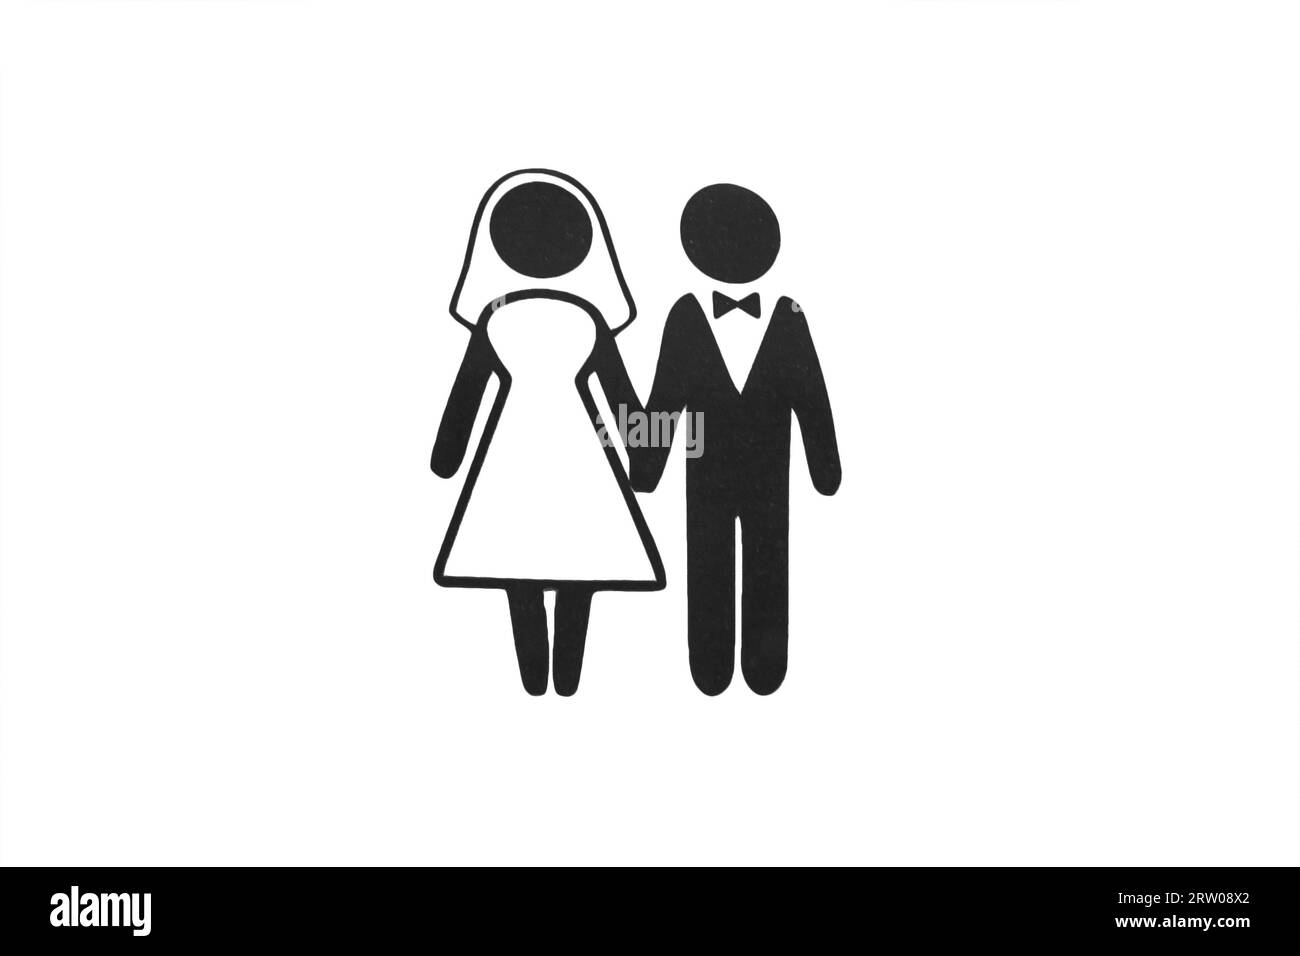 Imagen de una pareja casada, novia y novio, boda, signo y símbolo, objeto sobre un fondo blanco aislado. Foto de stock